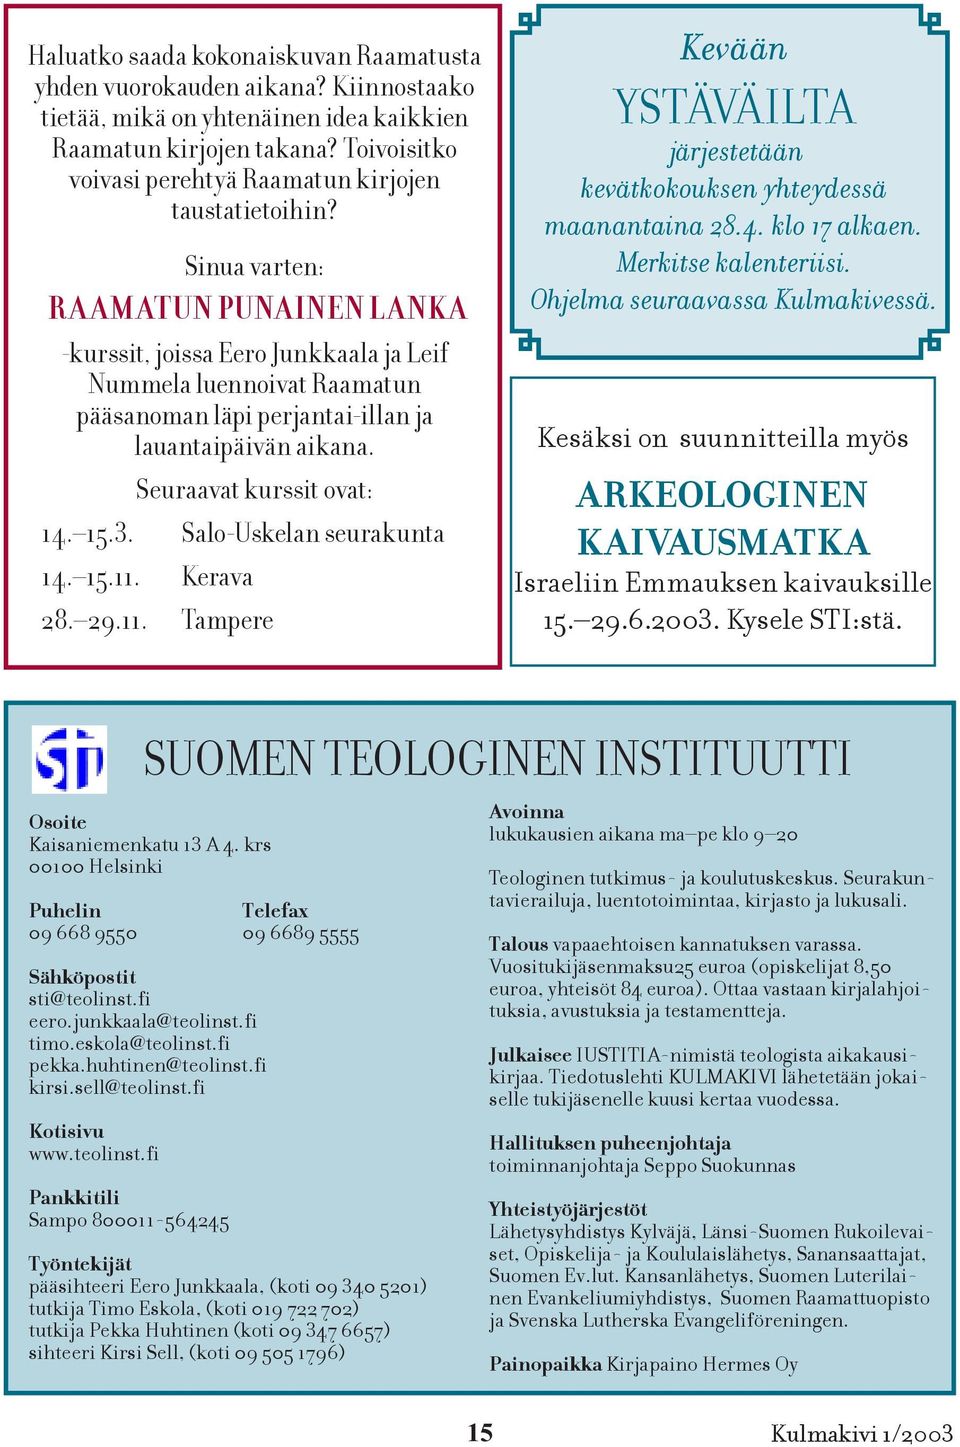 Sinua varten: R A AMATUN PUNAINEN L ANK A -kurssit, joissa Eero Junkkaala ja Leif Nummela luennoivat Raamatun pääsanoman läpi perjantai-illan ja lauantaipäivän aikana. Seuraavat kurssit ovat: 14. 15.